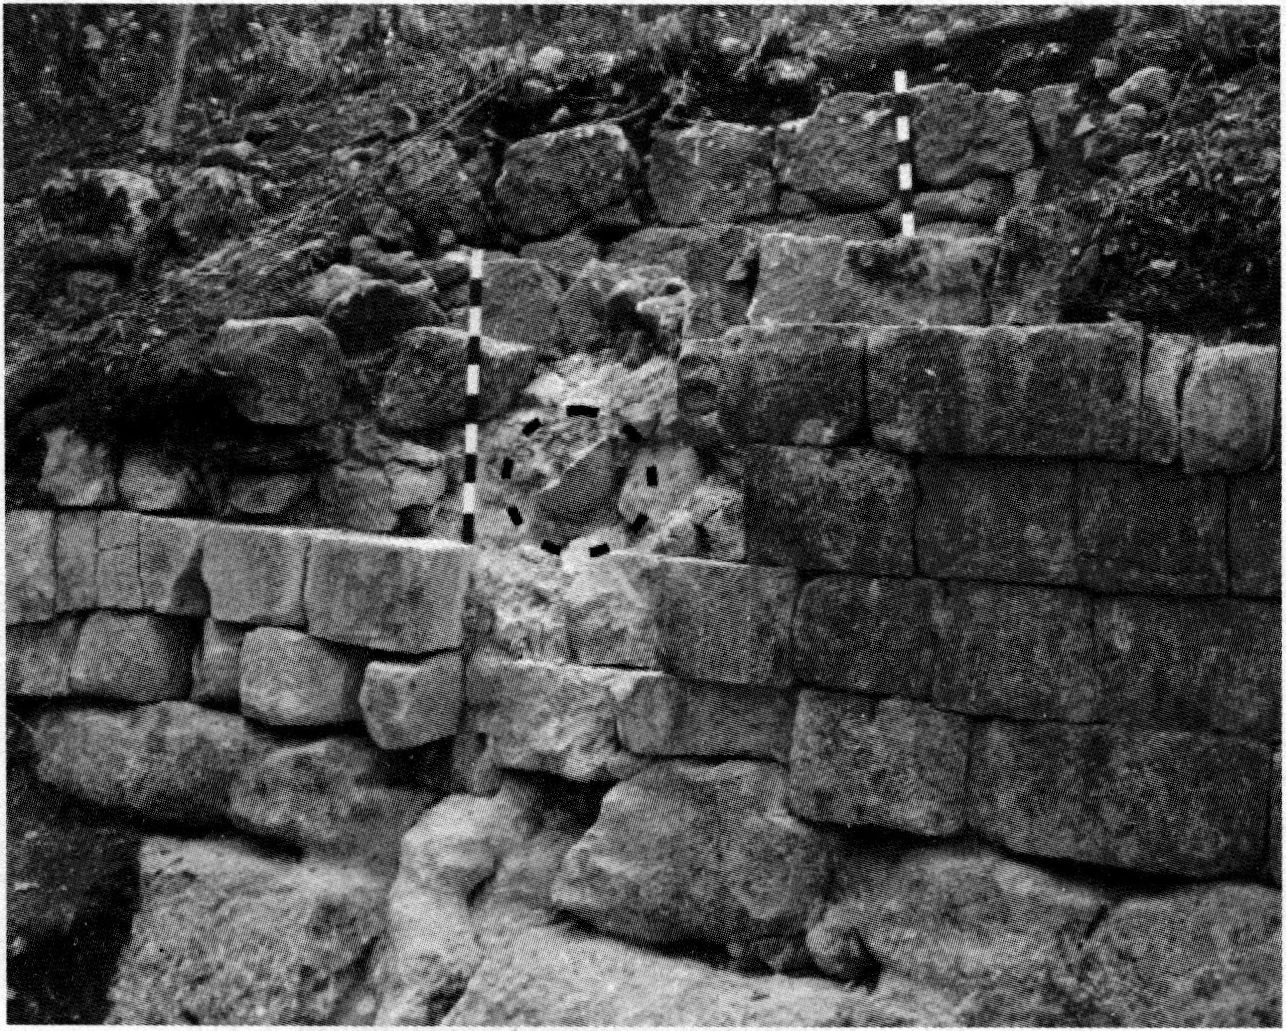 Участок укрепления A.XIV с засевшим каменным ядром после проведения исследований